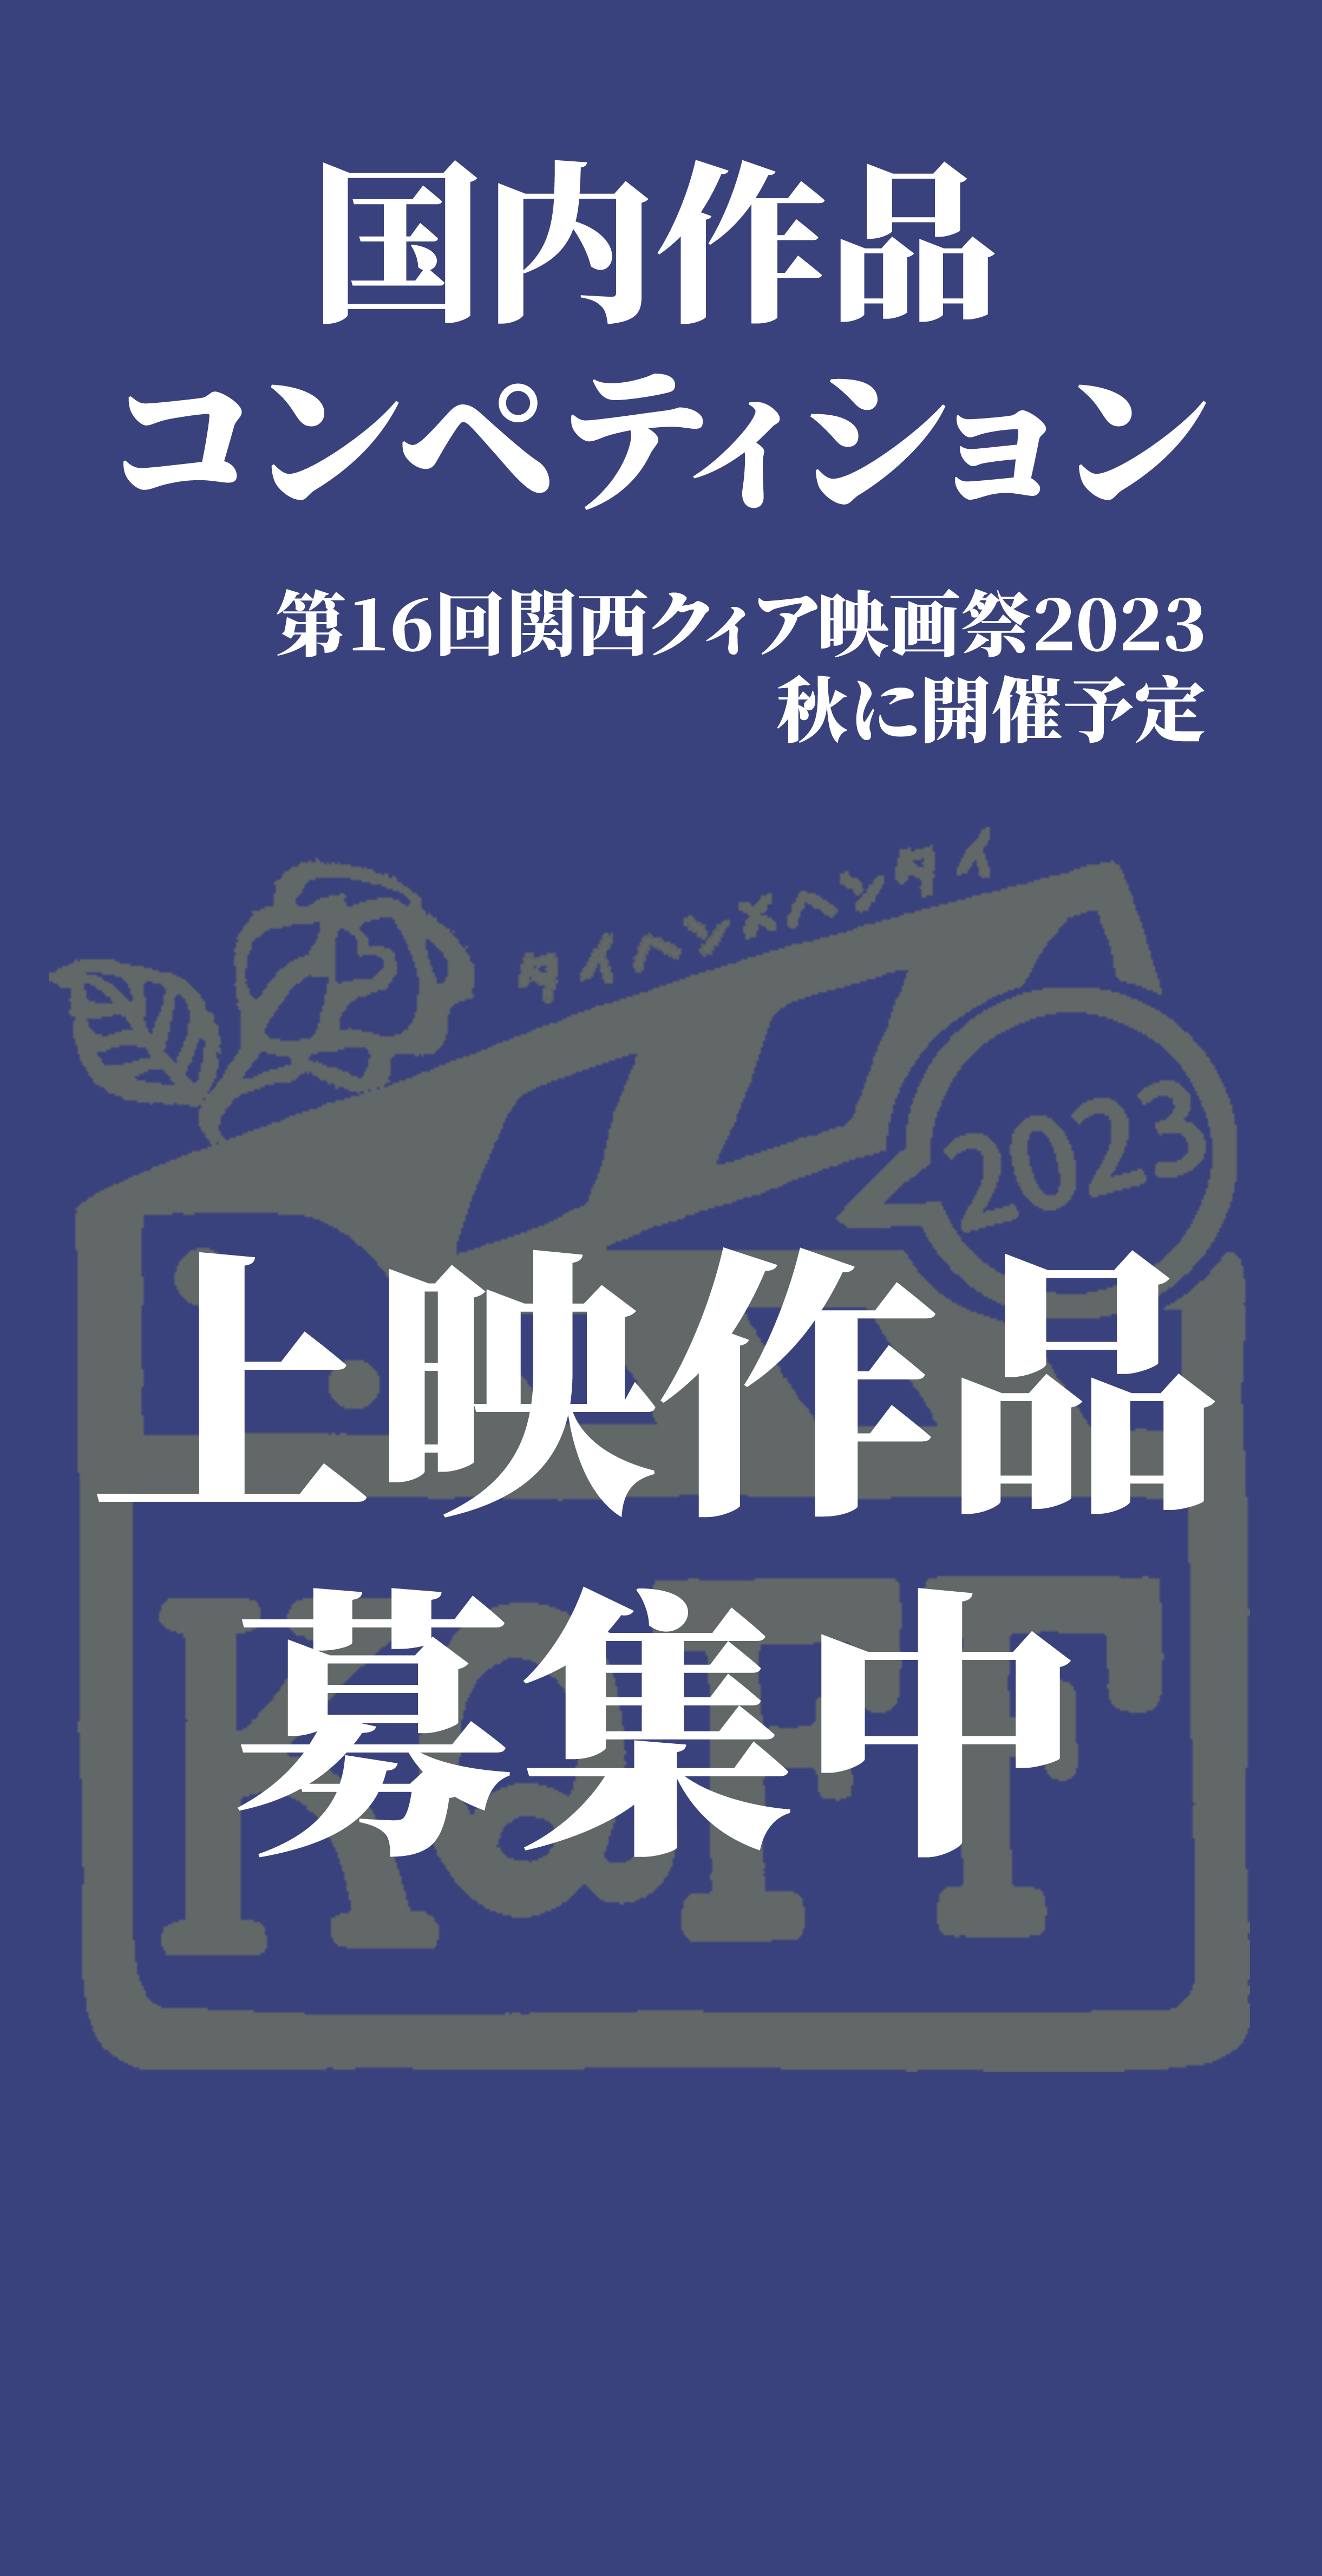 国内作品コンペティション
第16回関西クィア映画祭2023
秋に開催予定
上映作品募集中